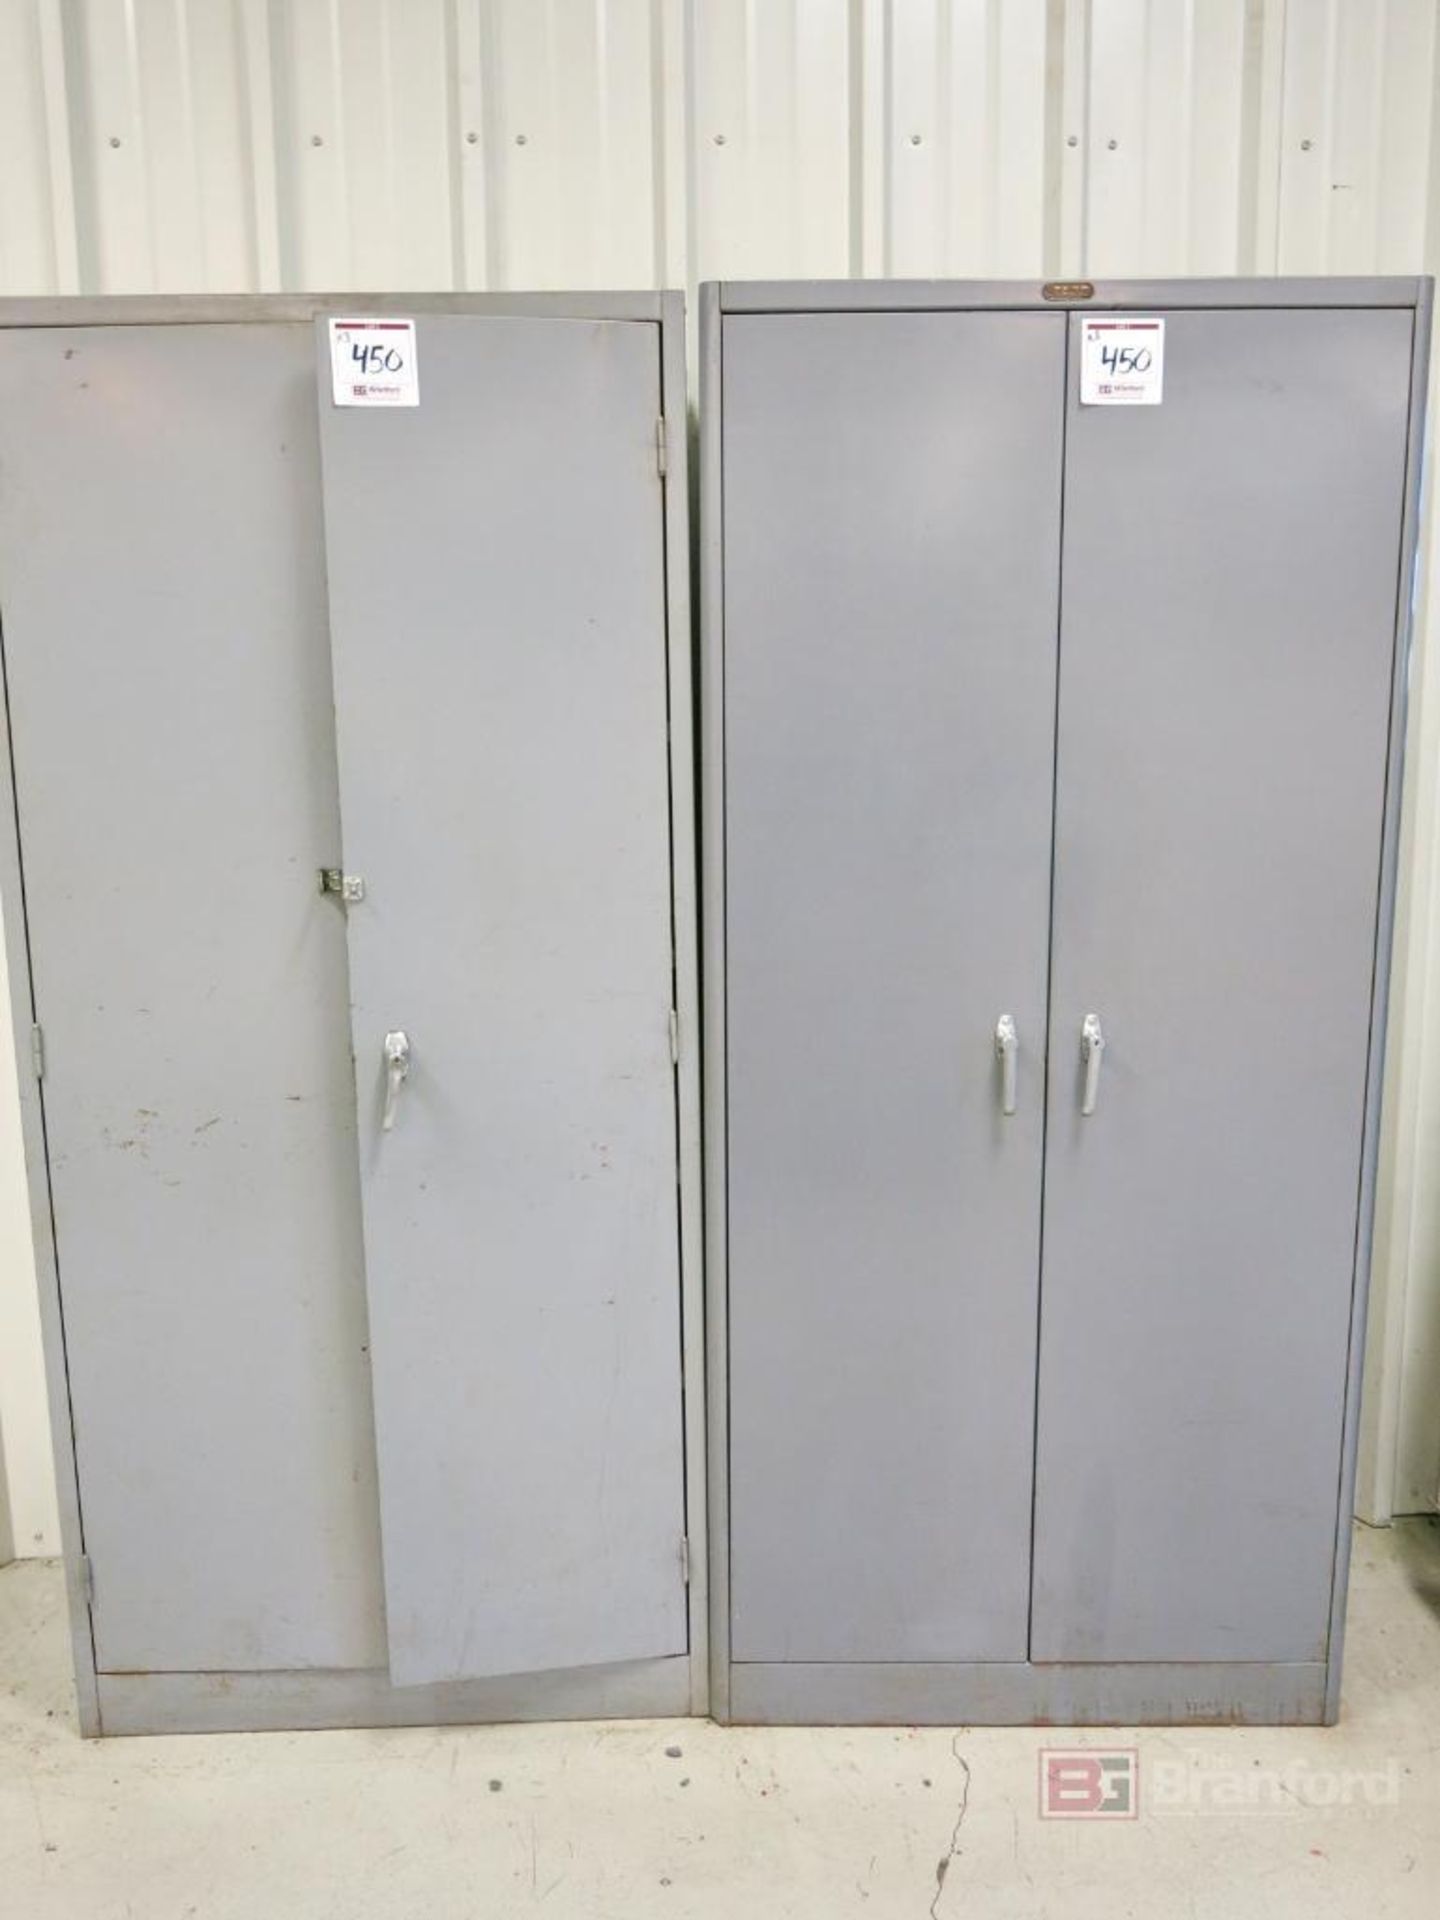 (3) 2-Door Metal Cabinets w/ Contents